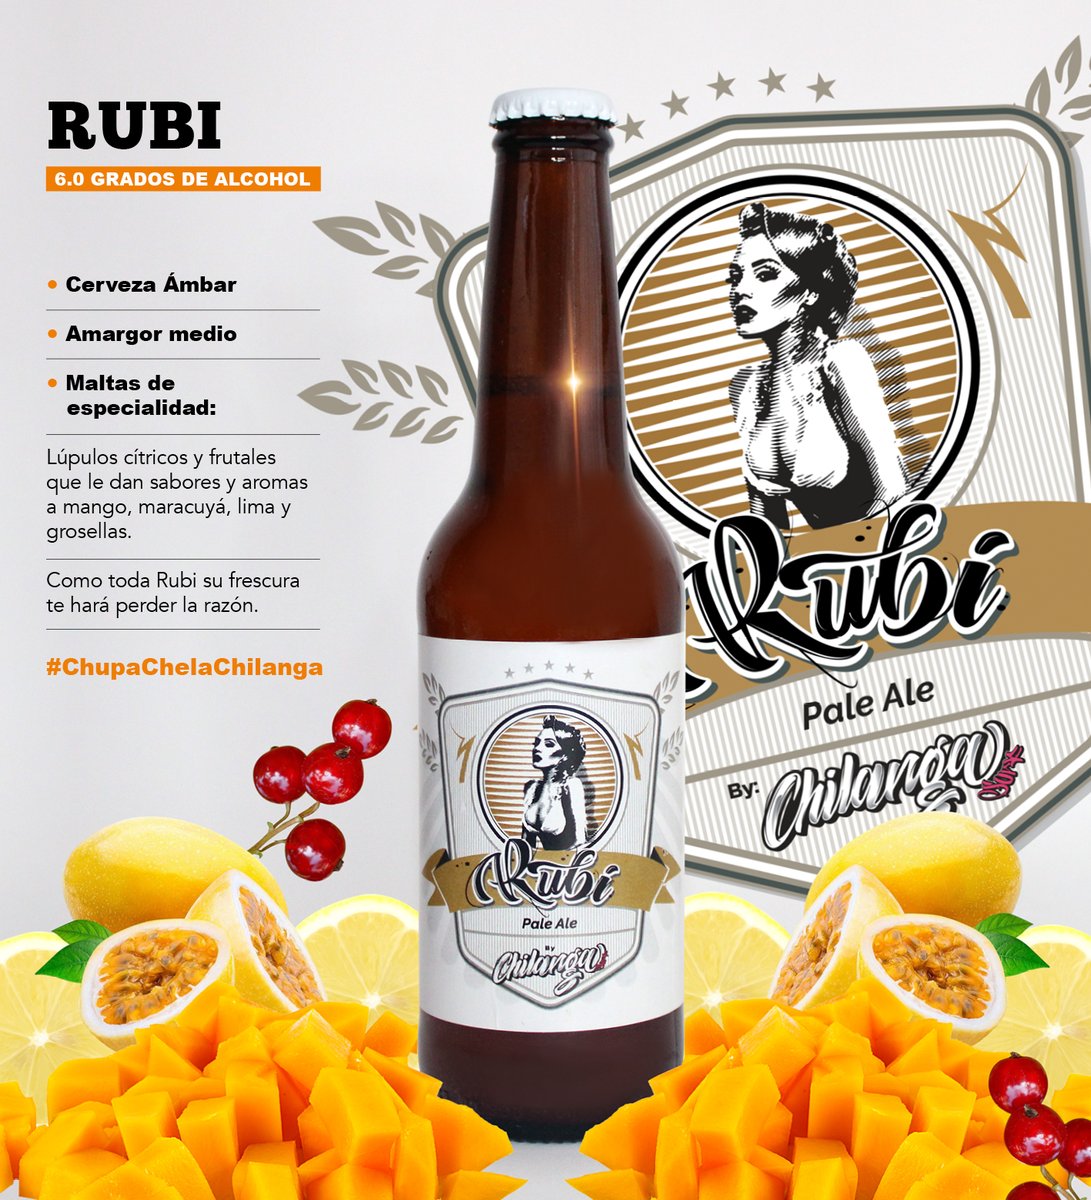 Nuestra cerveza artesanal #Rubi con sabores y aromas a mango, maracuyá, lima y grosellas, la podrán encontrar desde este viernes 11 de nov. en Terraza Cozumel / Cozumel 12 Roma Norte.

#ChupaChelaChilanga